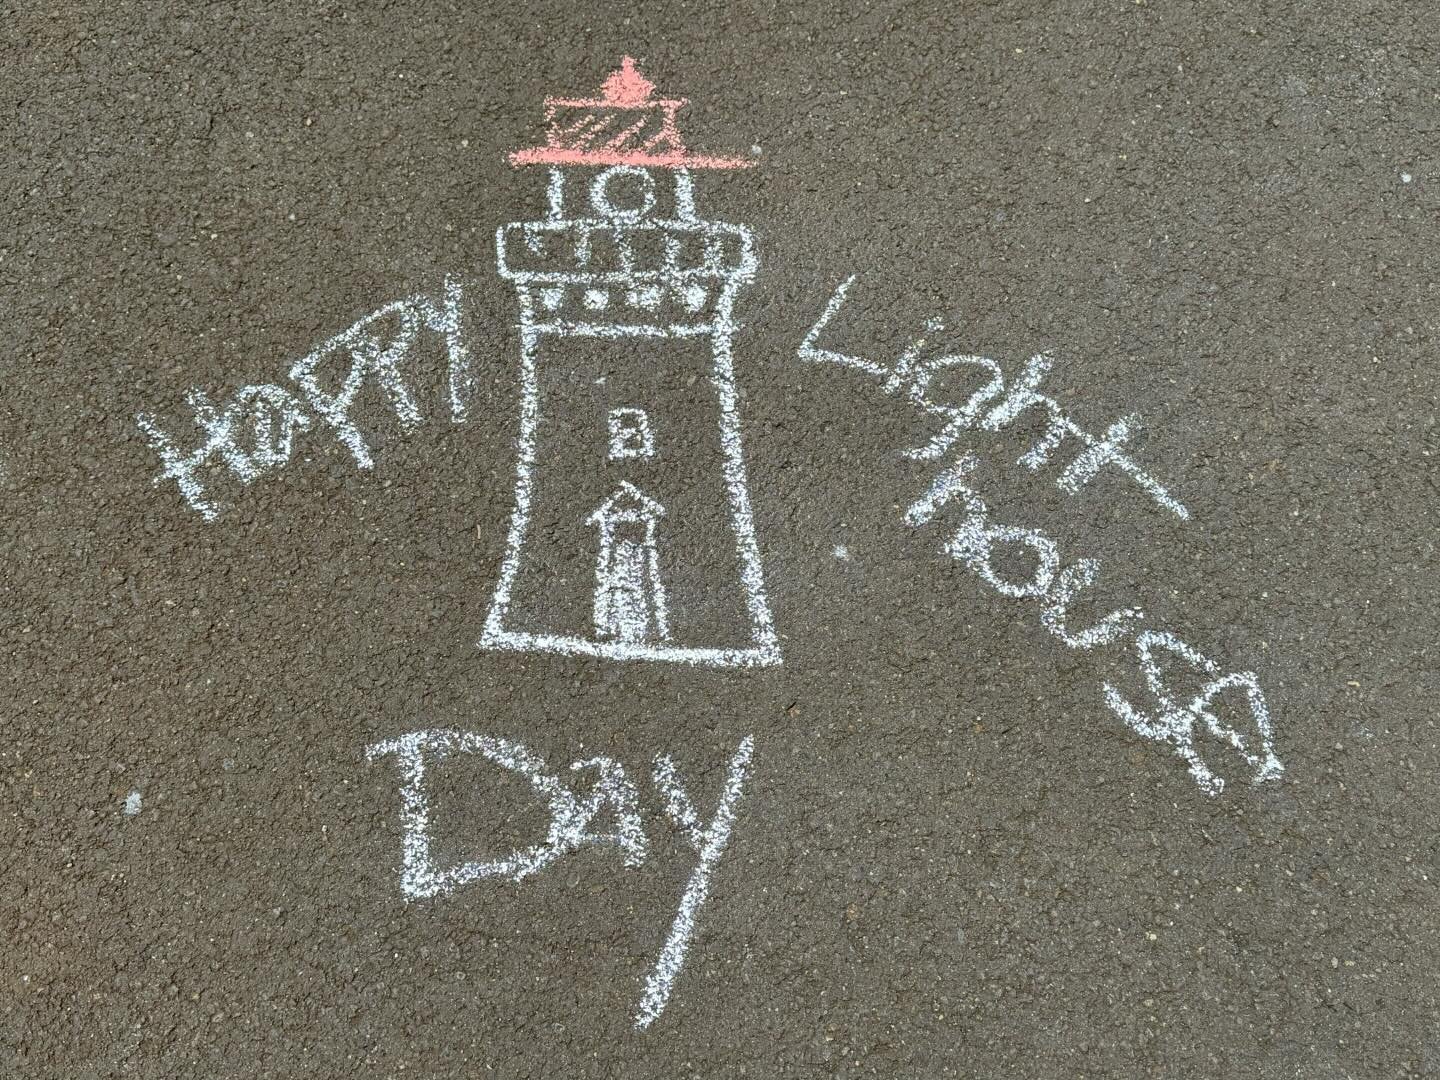 Happy Lighthouse Day at Kīlauea Point National Wildlife Refuge!